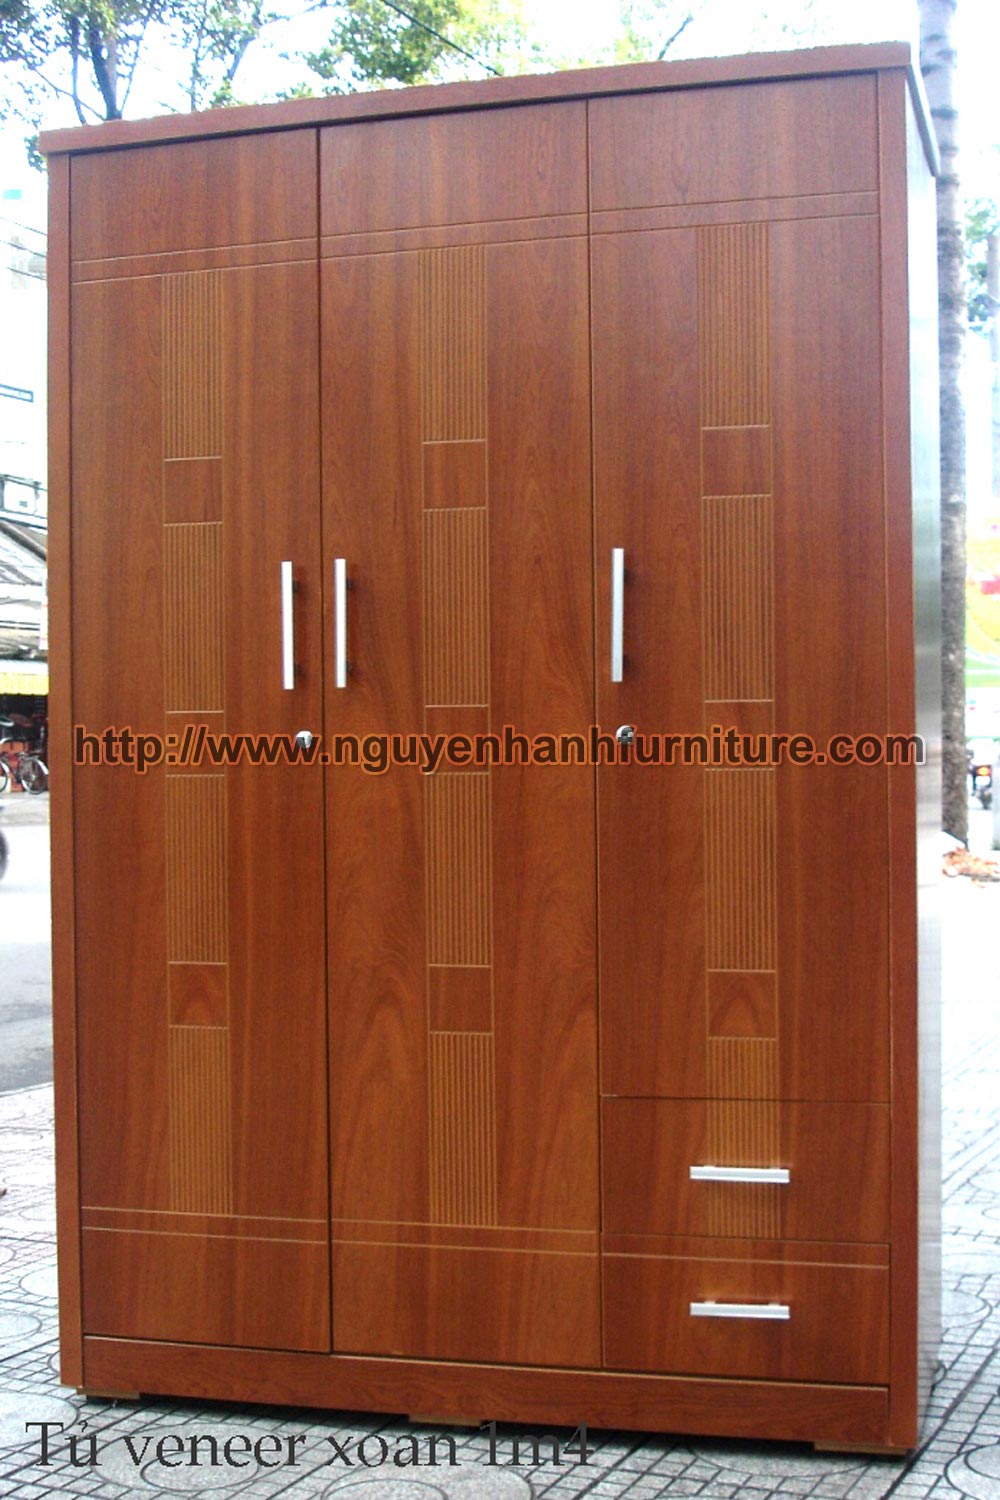 Name product: 1m4 Wardrobe of veneer Bead tree wood 